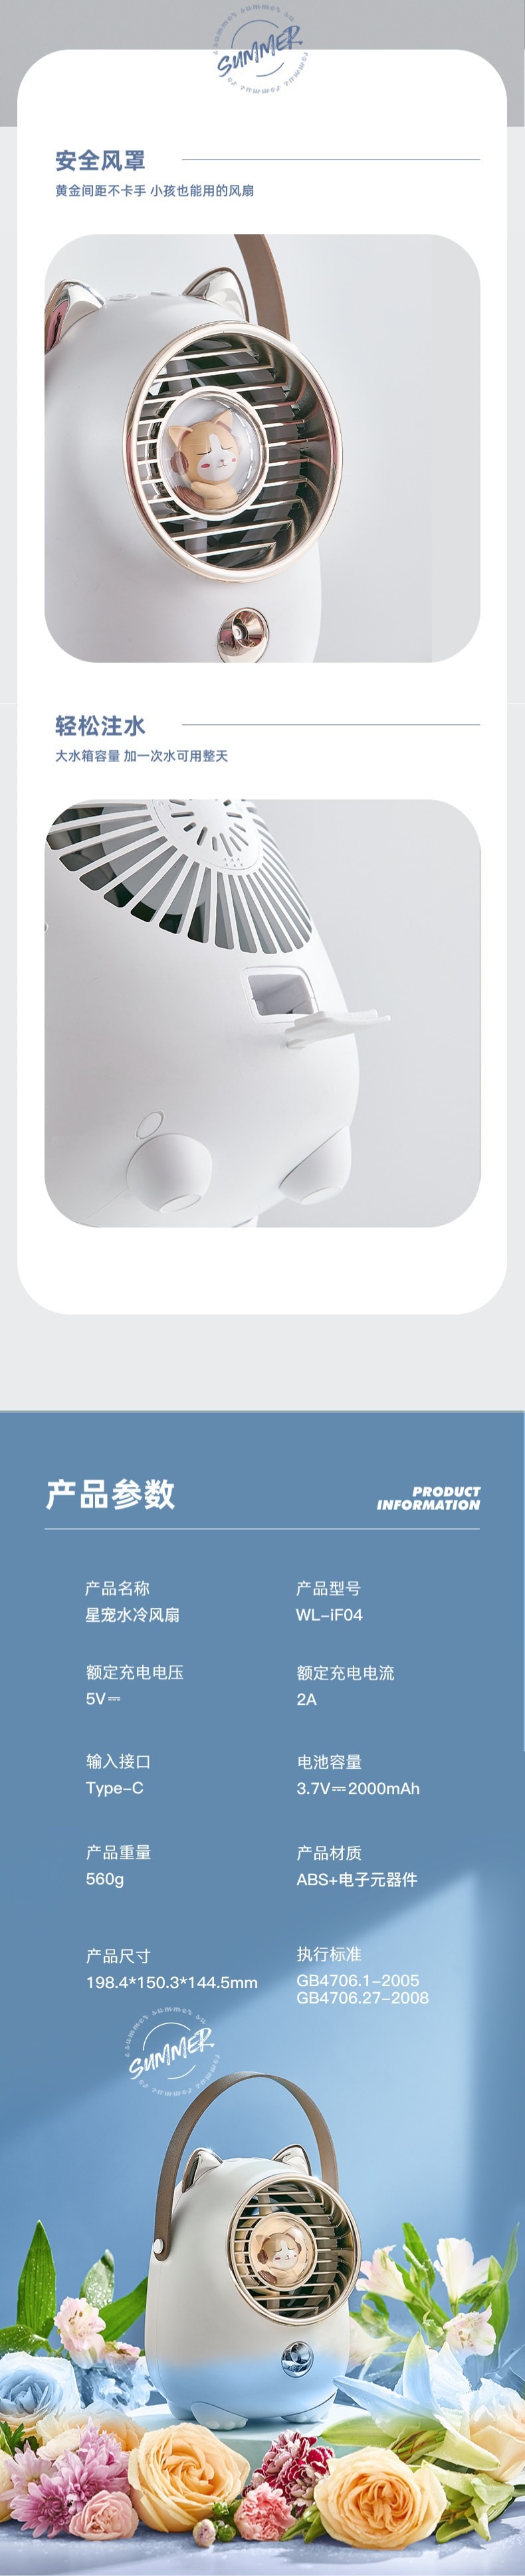 【中国直邮】水冷小风扇 空气循环式空调扇 桌面喷雾风扇 USB充电 粉色